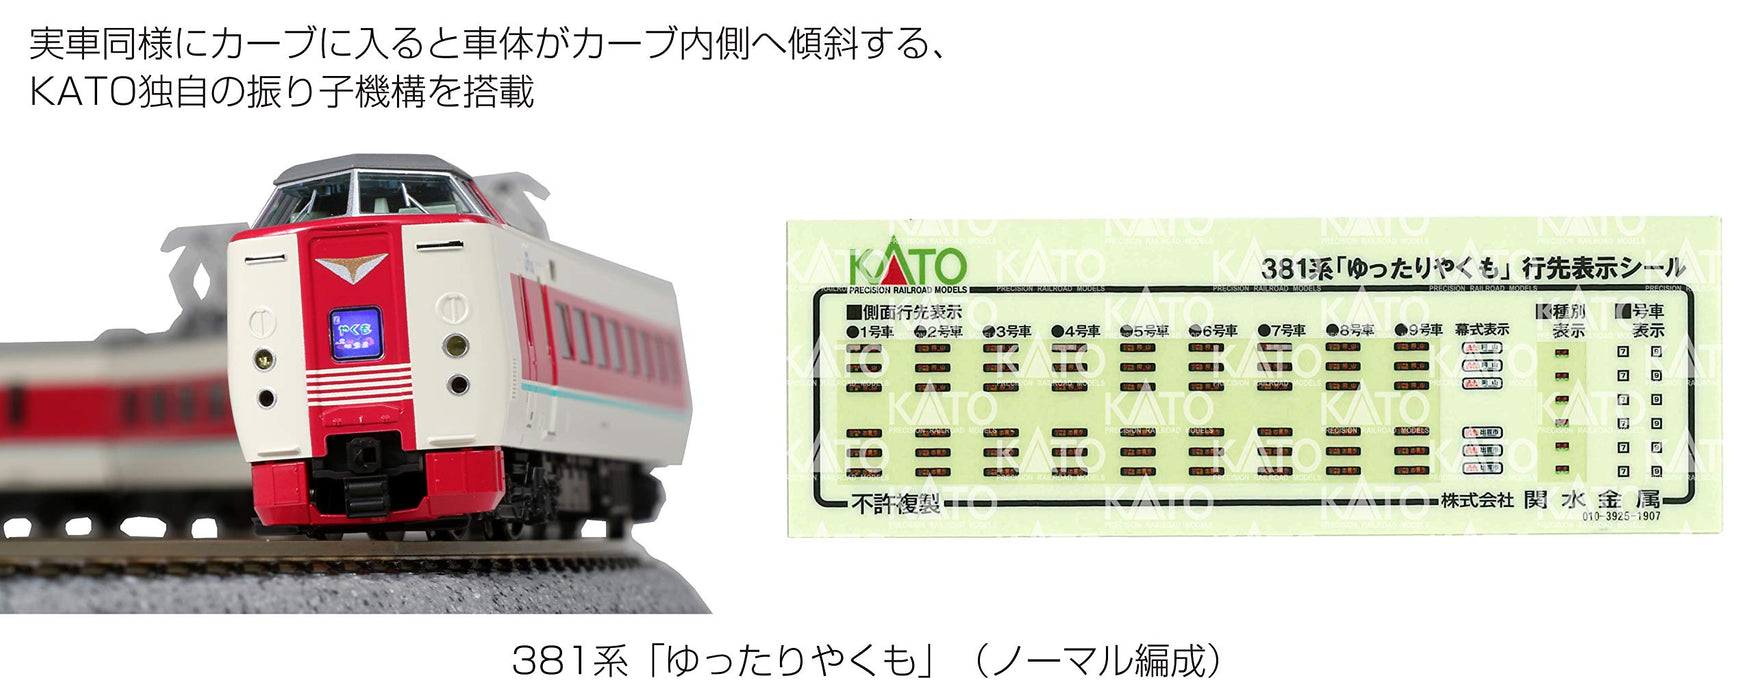 Kato N Spur 381 Serie Yukuyaku Yakumo 7-Wagen-Set 10-1452 Modelleisenbahn